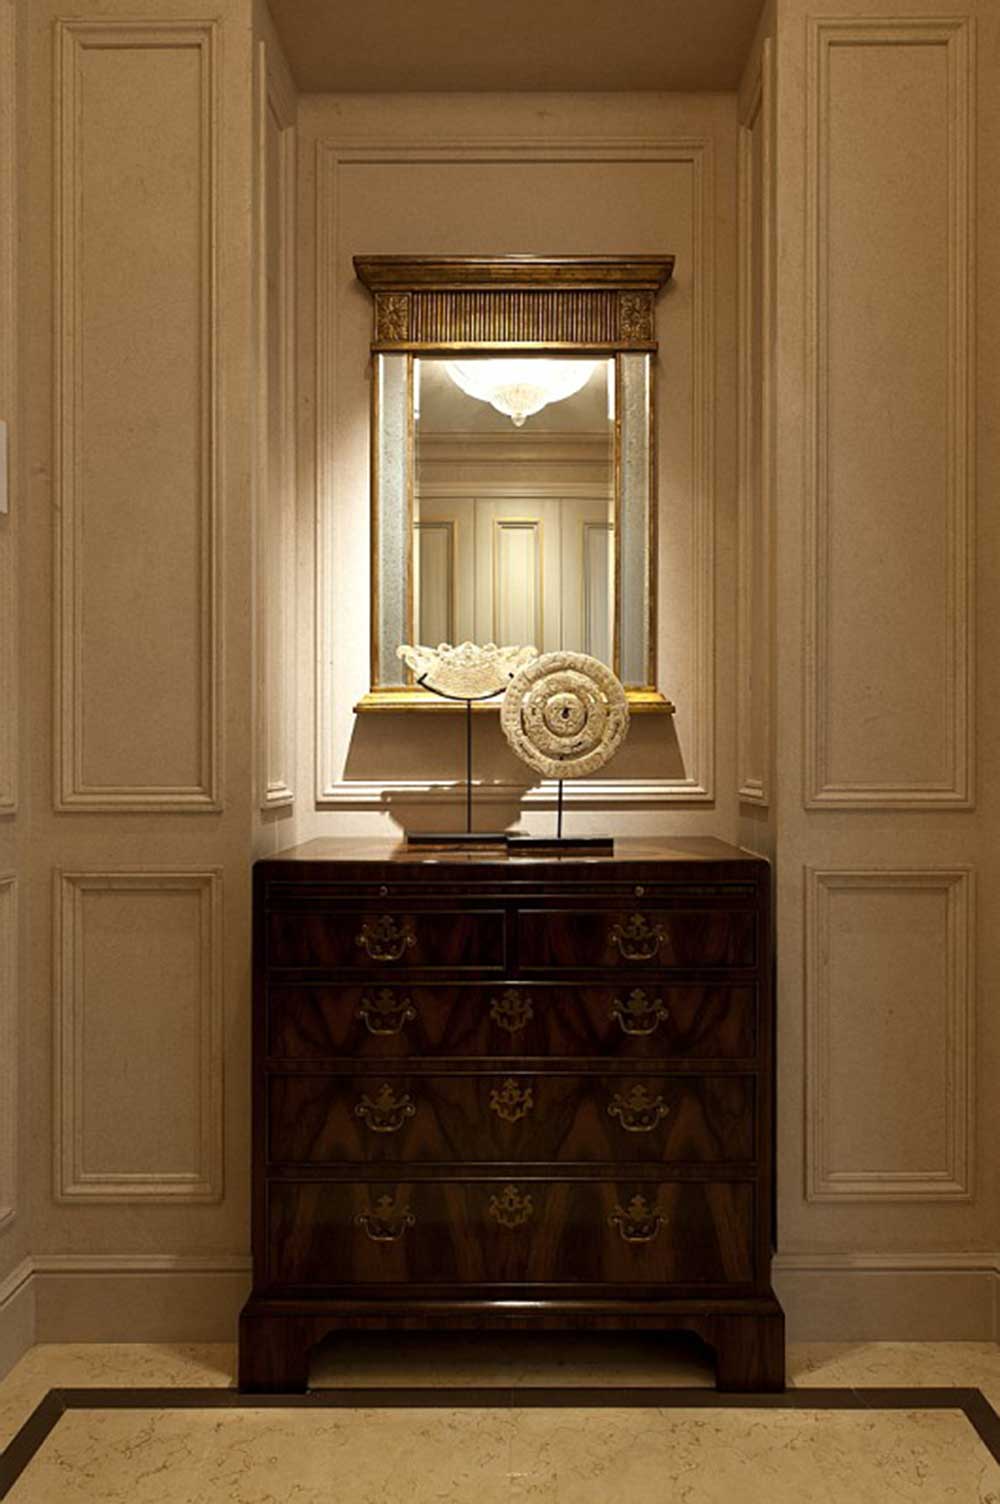 入门玄关处的装饰柜摆放的很端正，装饰柜柜门拉手充满了古典韵味，一面镜子装饰在柜子之上，增加了空间。